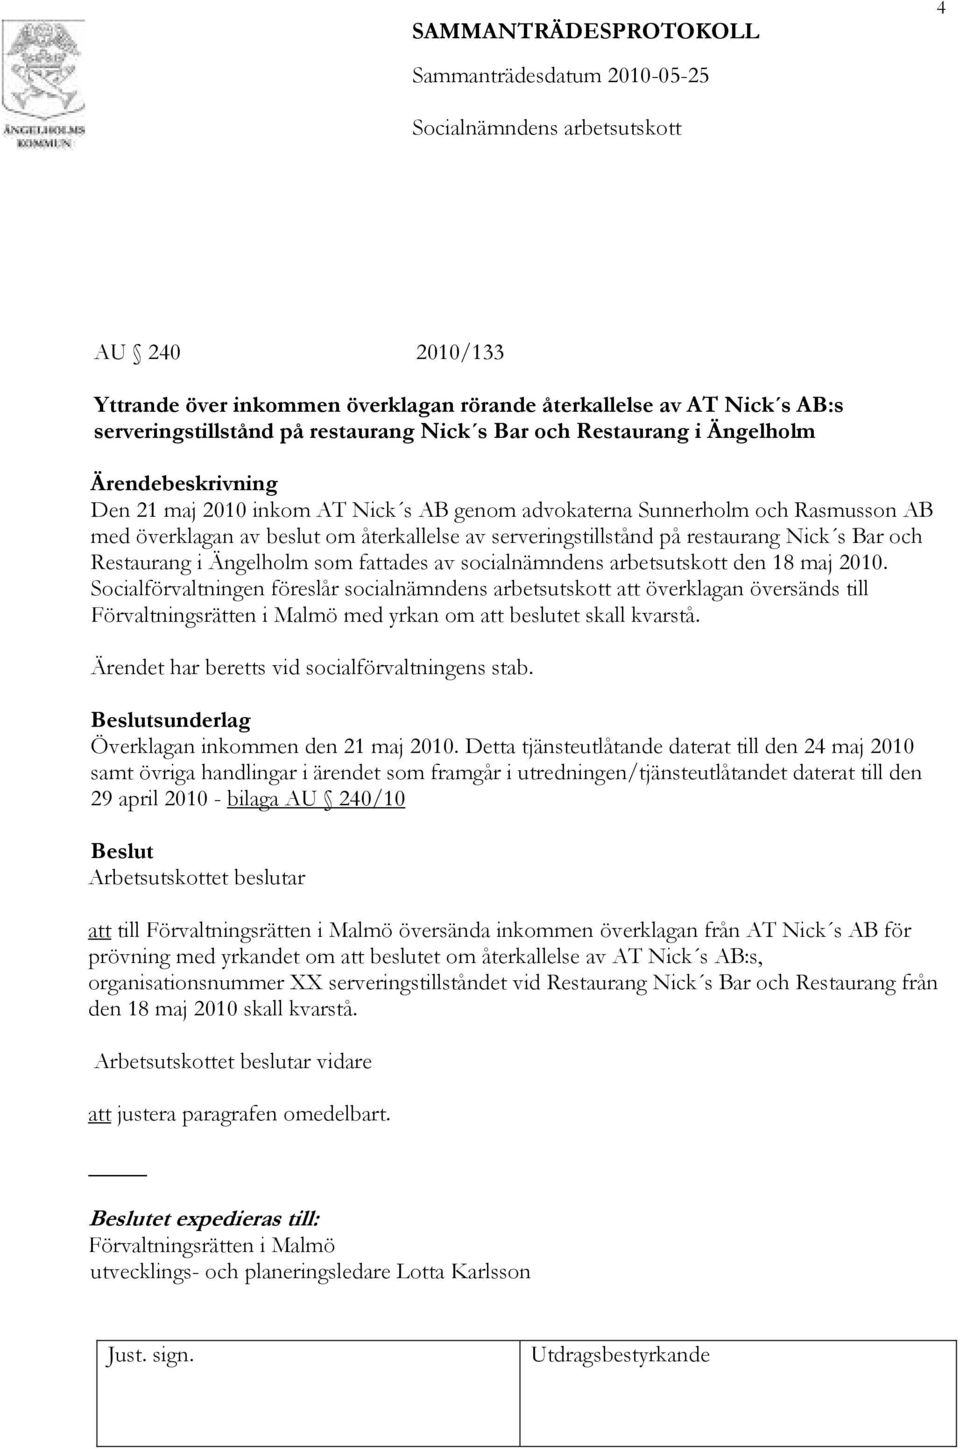 arbetsutskott den 18 maj 2010. Socialförvaltningen föreslår socialnämndens arbetsutskott att överklagan översänds till Förvaltningsrätten i Malmö med yrkan om att beslutet skall kvarstå.